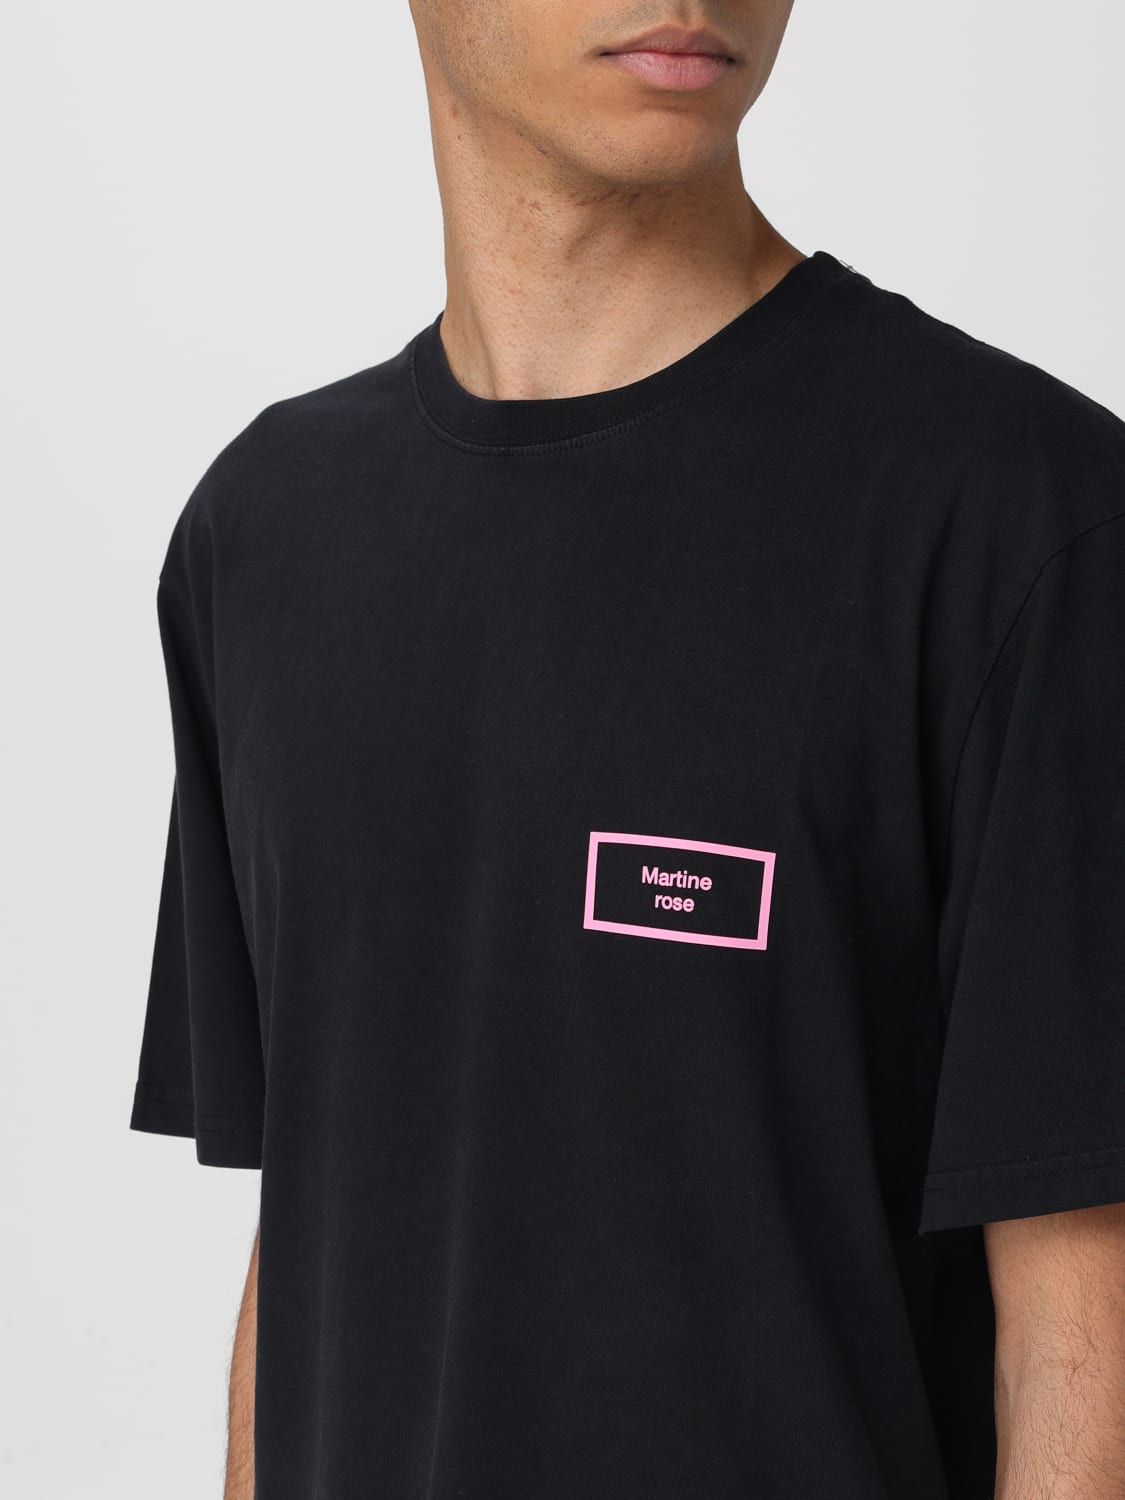 特価セールMartine Rose ブラック メンズ Tシャツ サイズ L Tシャツ/カットソー(半袖/袖なし)